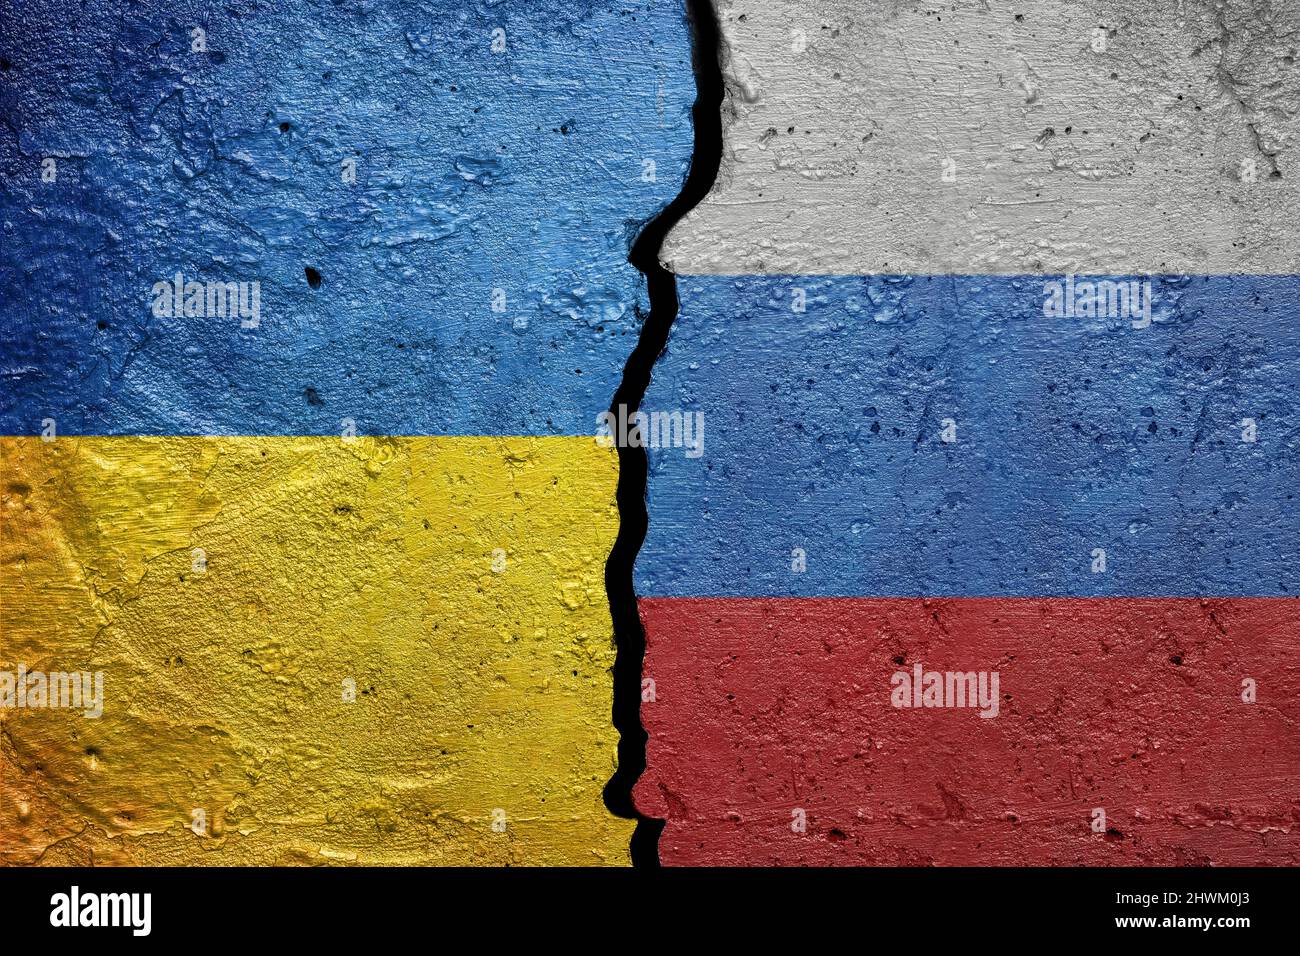 Ukraine et Russie - mur en béton fissuré peint avec un drapeau ukrainien à gauche et un drapeau russe à droite Banque D'Images